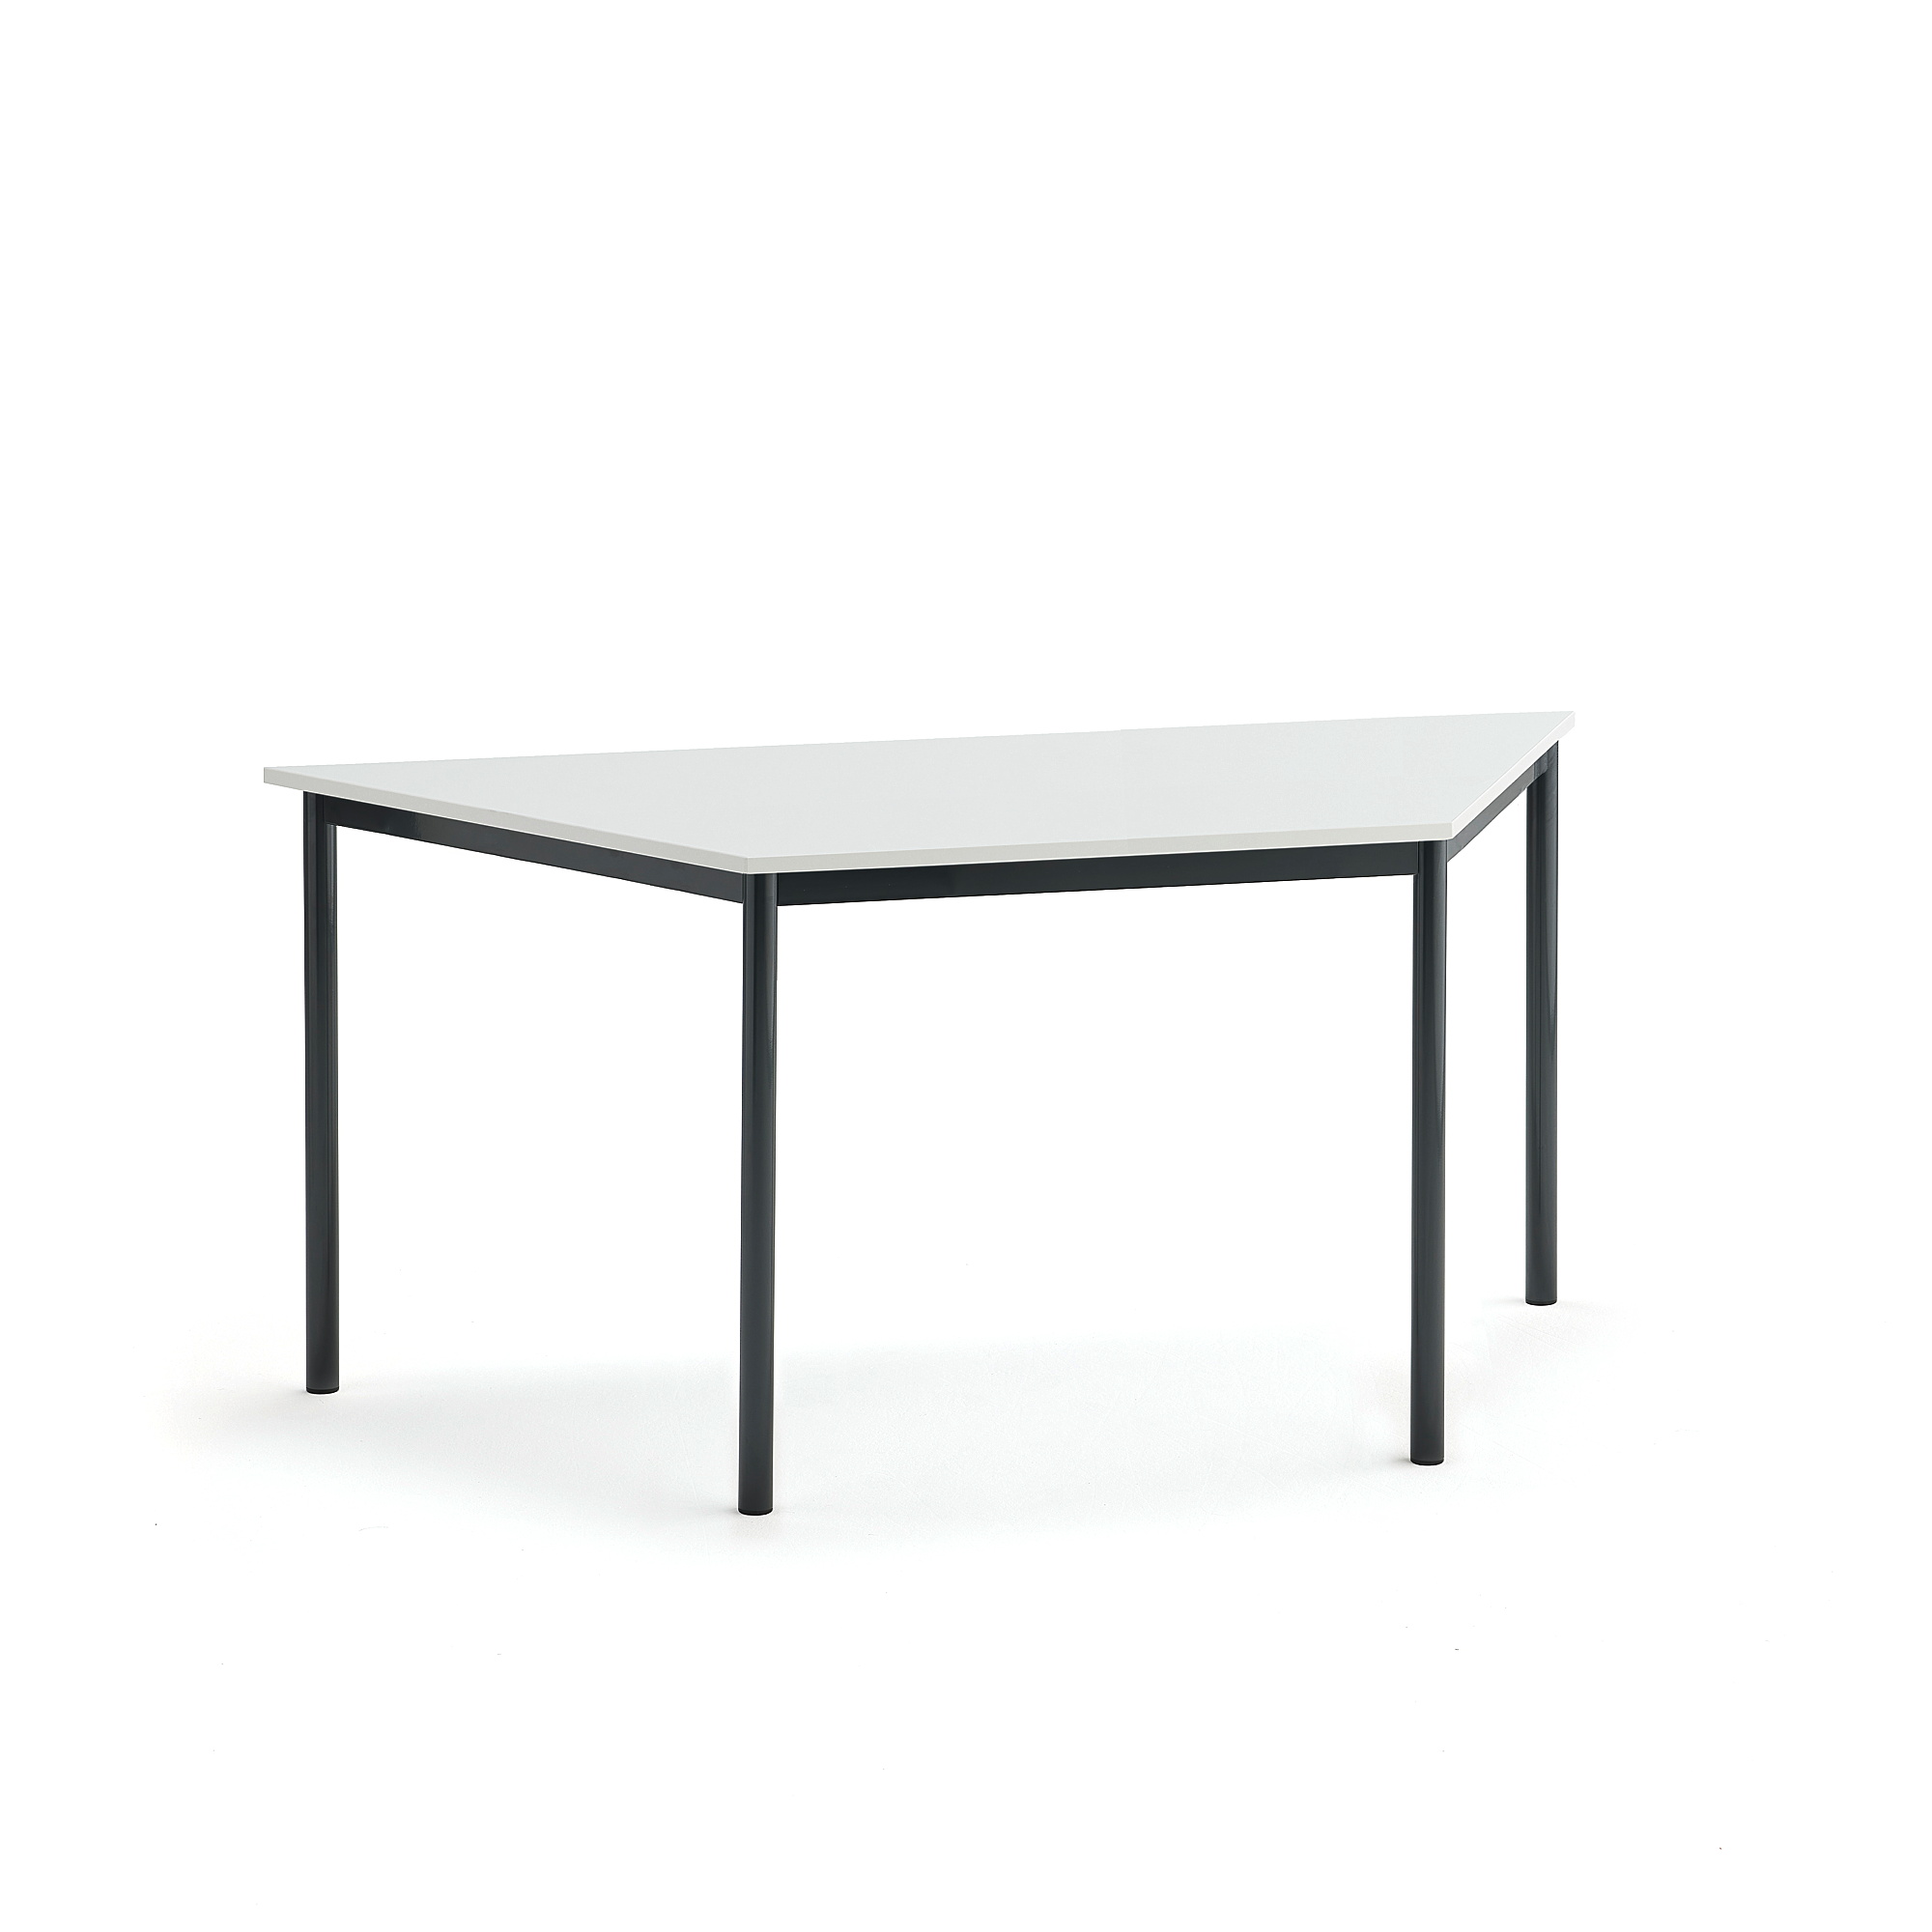 Stůl SONITUS TRAPETS, 1600x800x720 mm, antracitově šedé nohy, HPL deska tlumící hluk, bílá